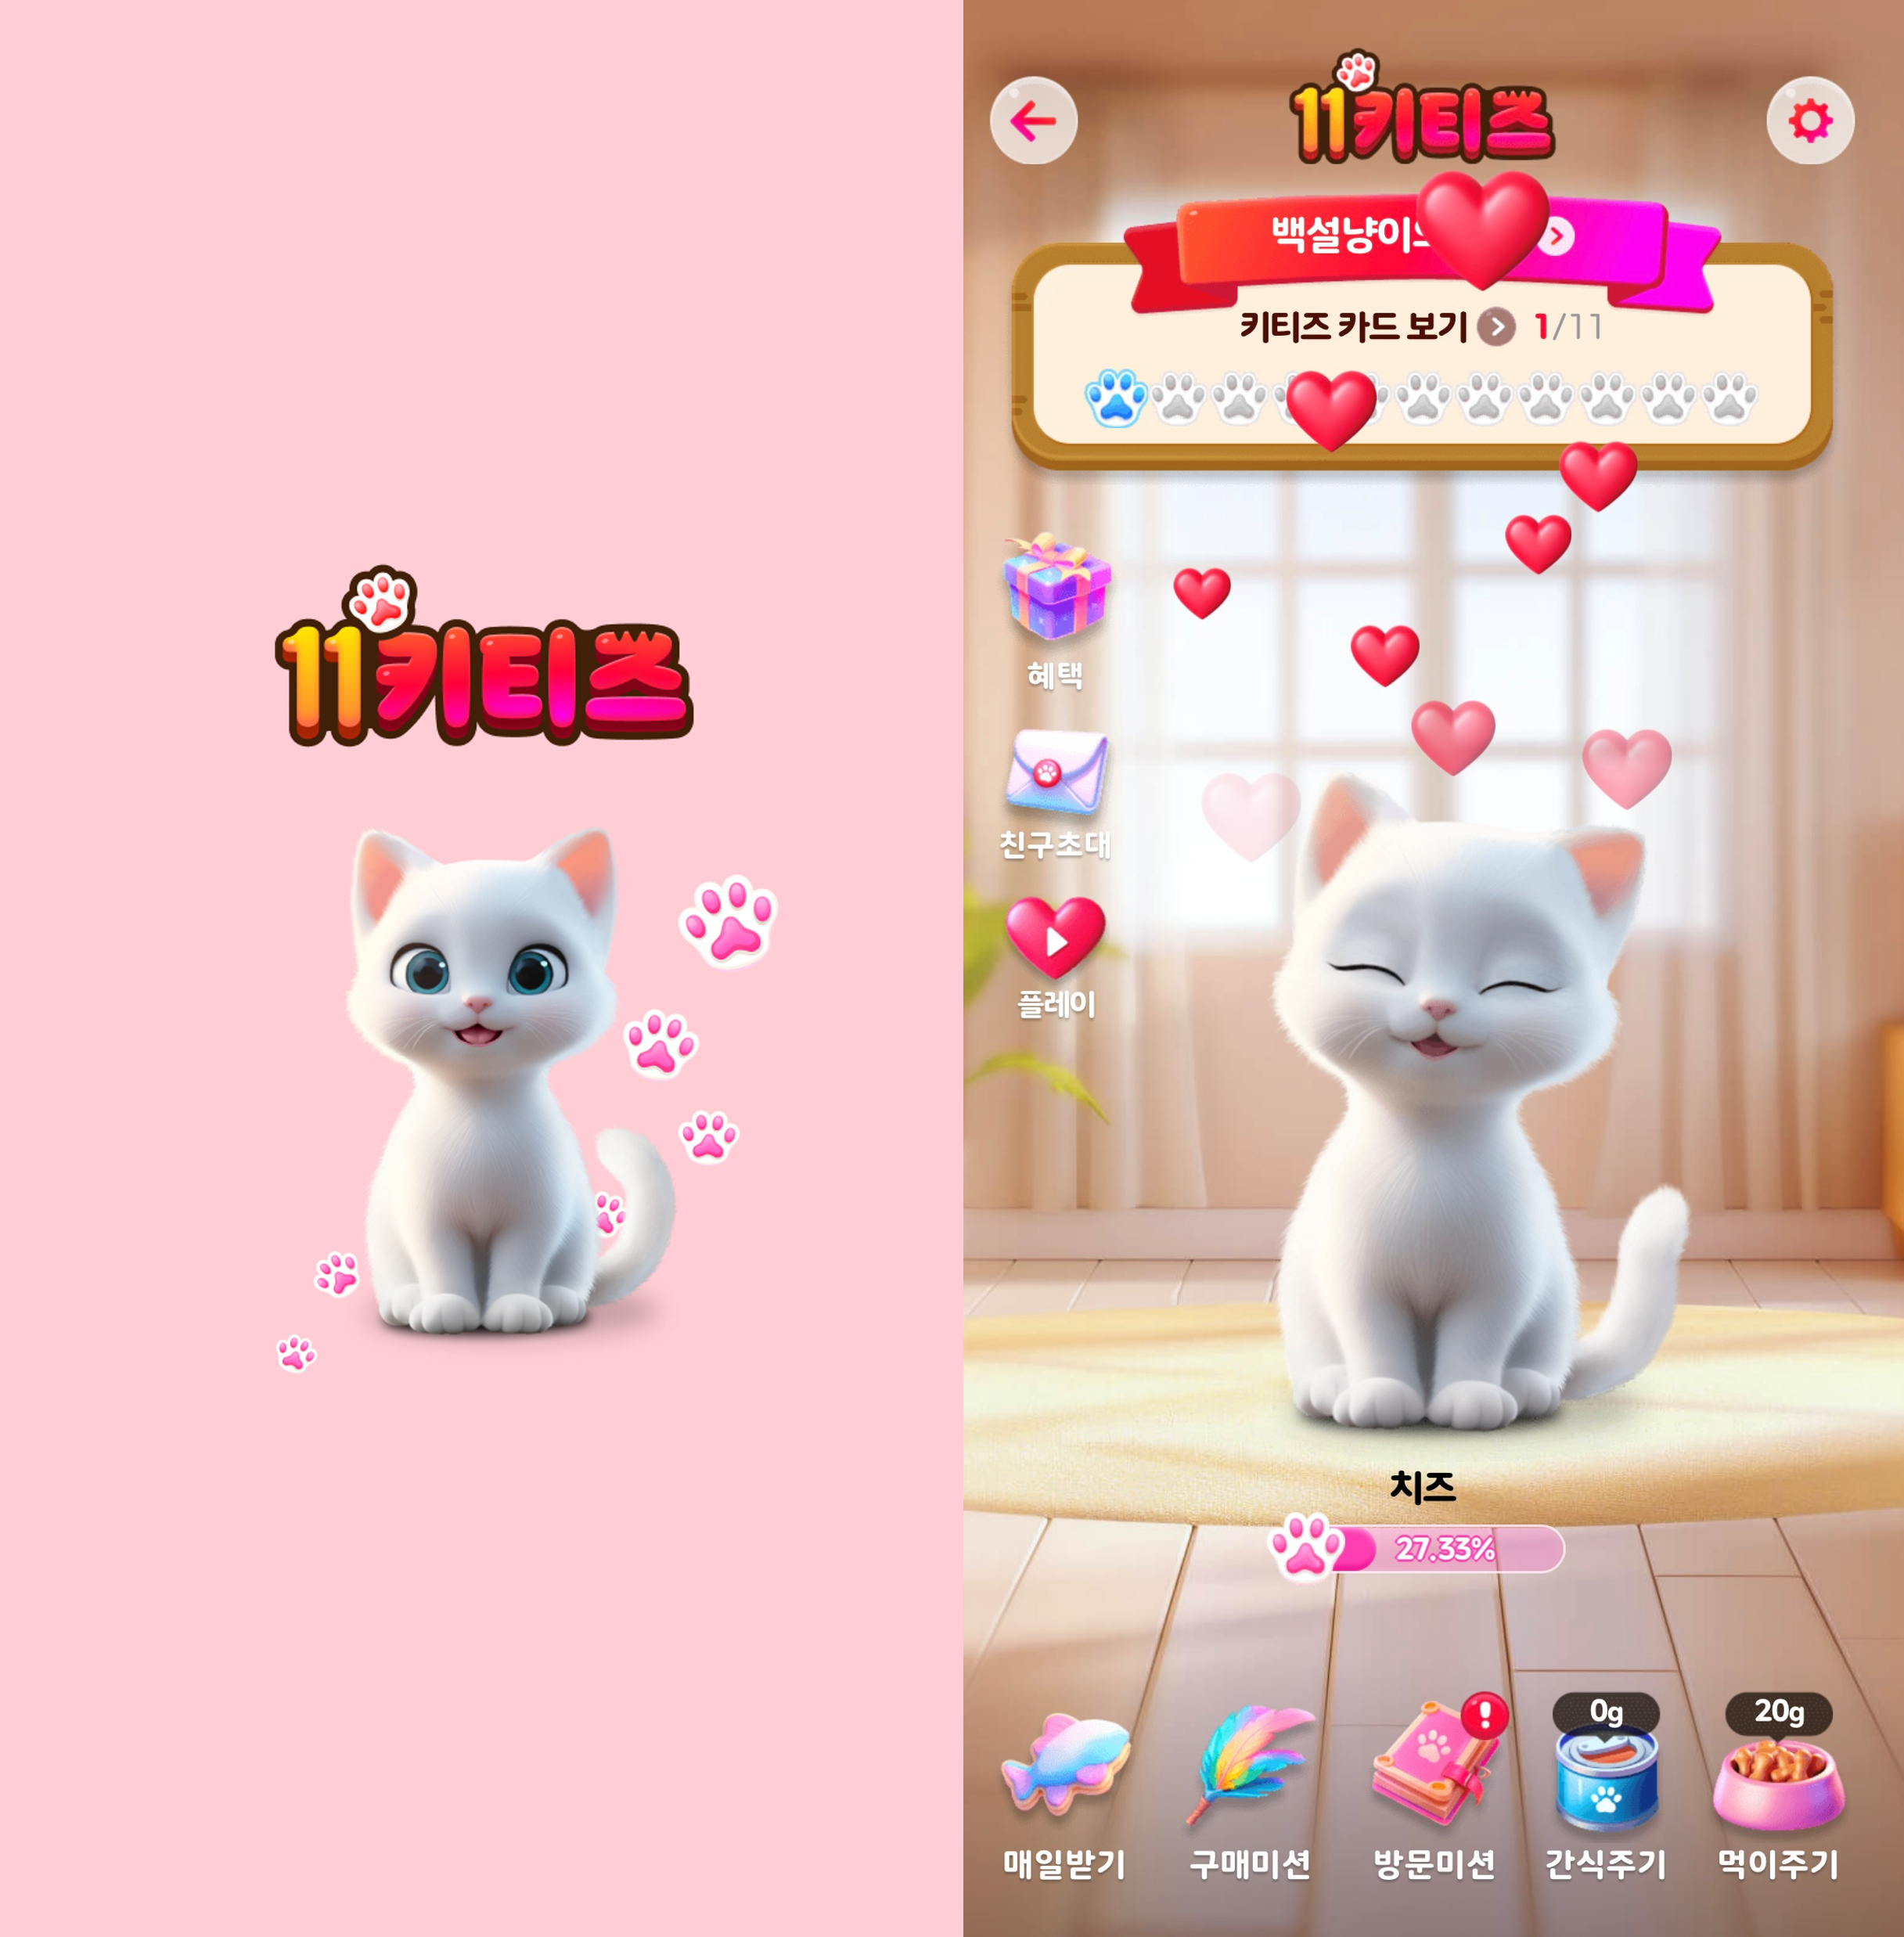 하얀색 고양이가 있는 11키티즈 게임 화면